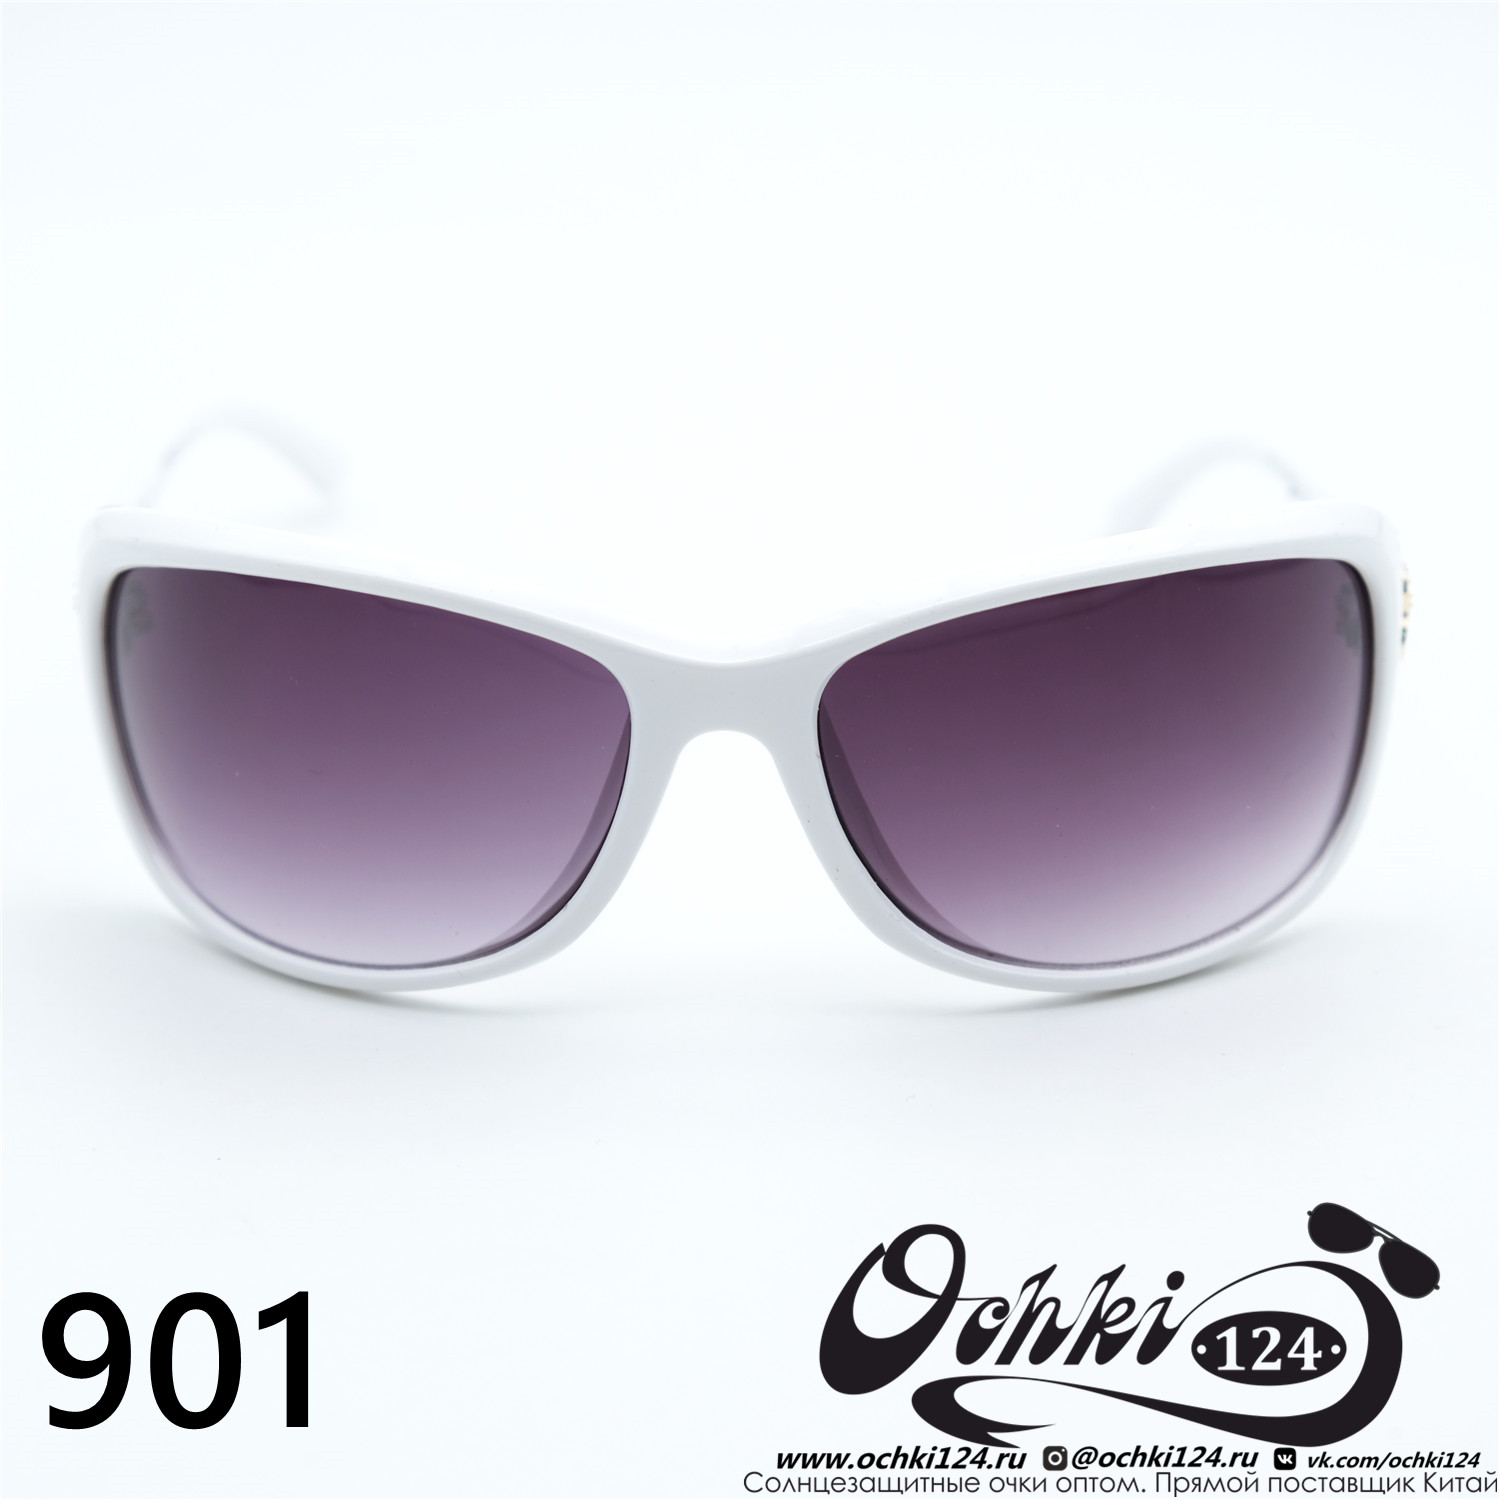  Солнцезащитные очки картинка Женские Prius  Стандартные 901-C6 